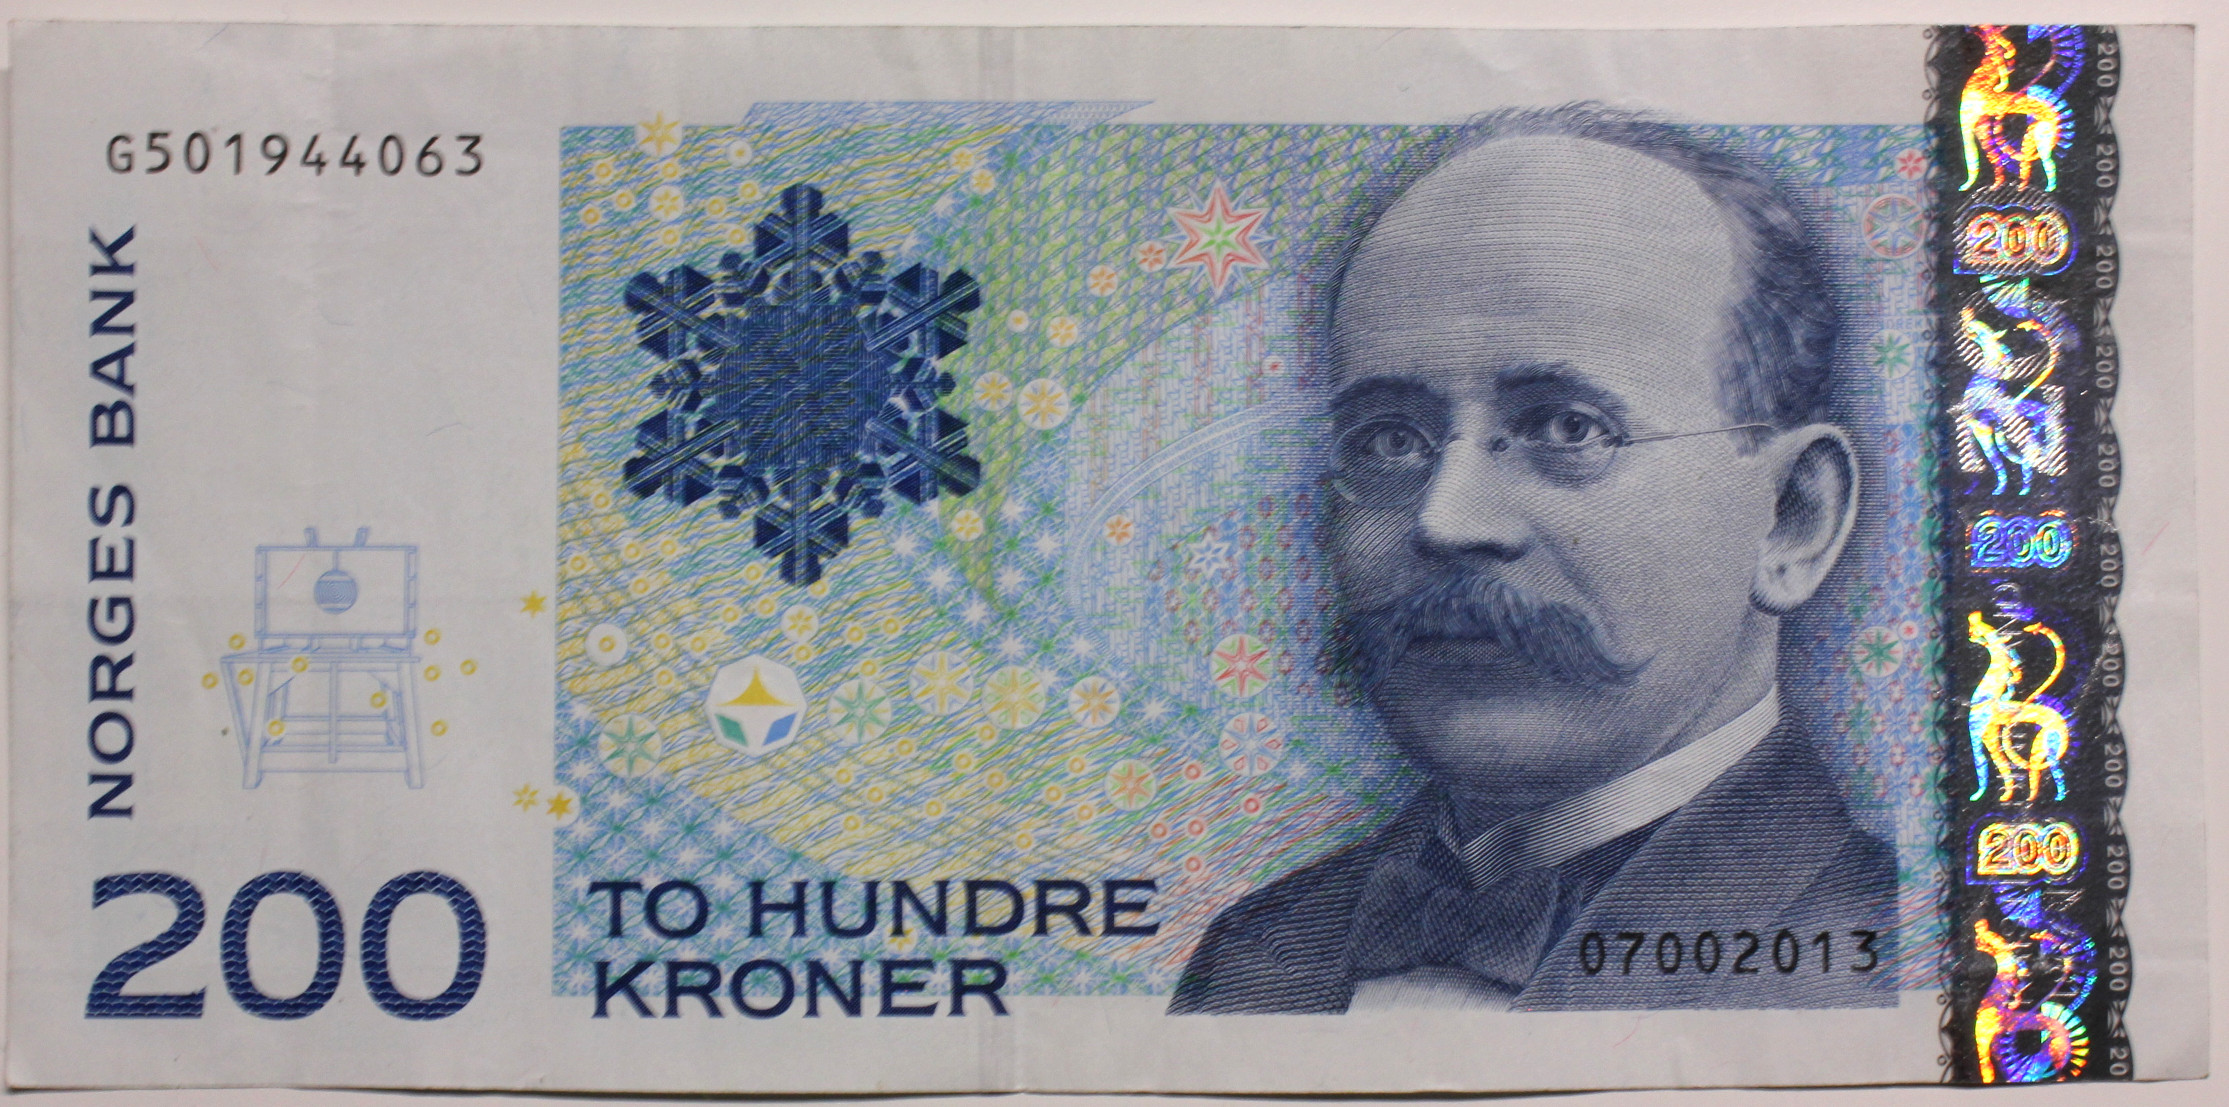 Dersom du har gamle sedler som Birkeland- og Flagstad-sedlene, kan du veksle dem inn i Norges Bank